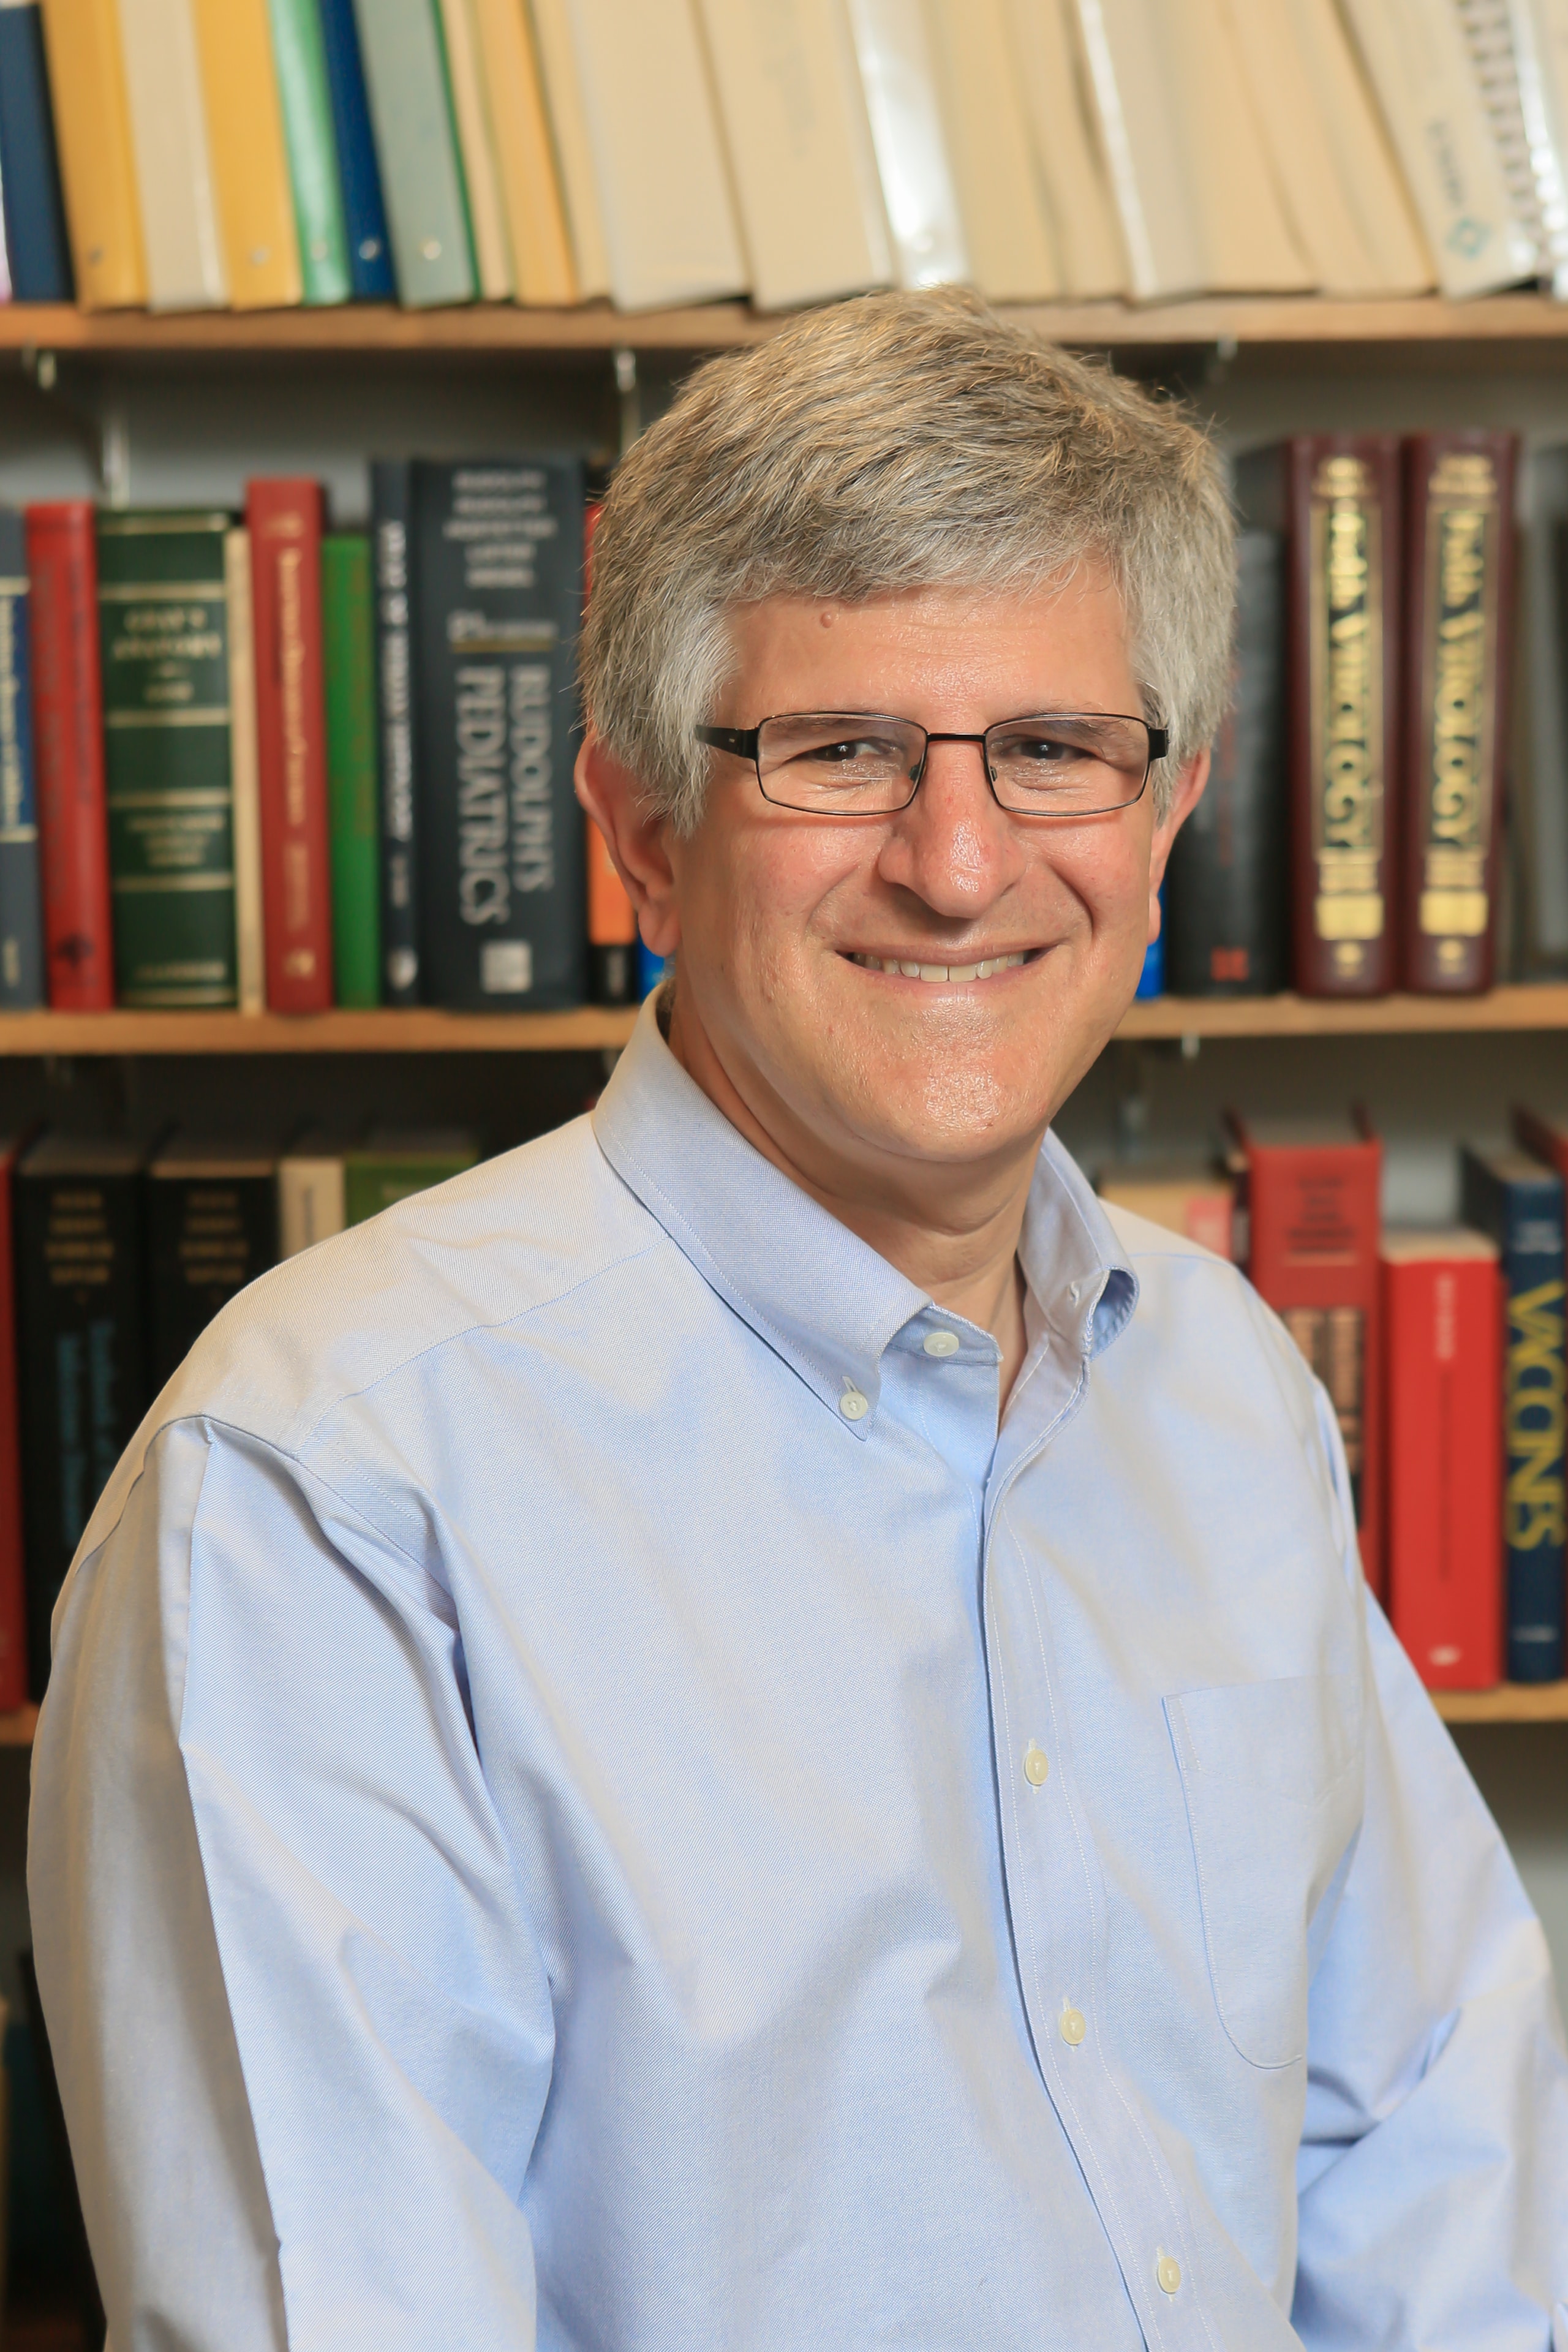 Portrait of Paul Offit.